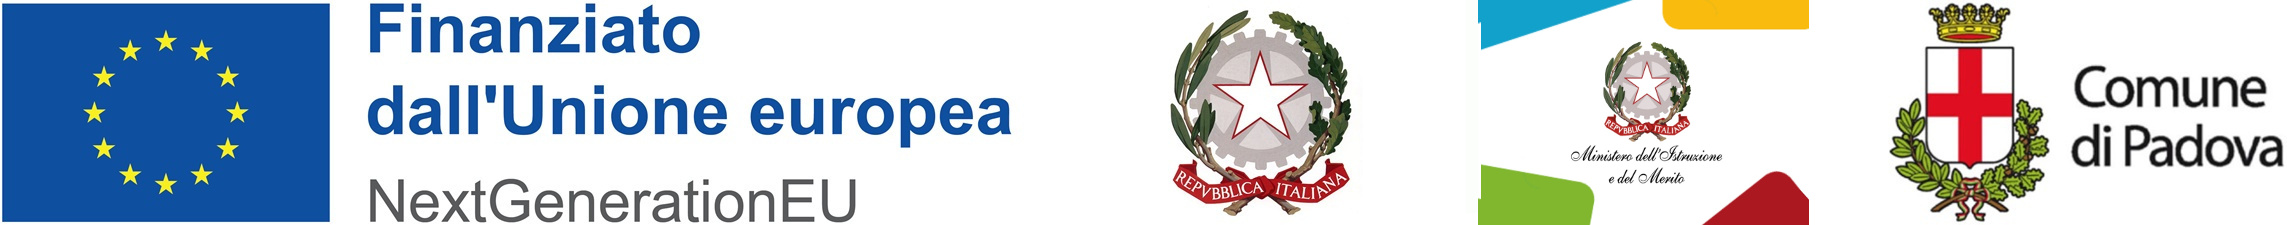 PNRR loghi Ministero dell'Istruzione e del Merito